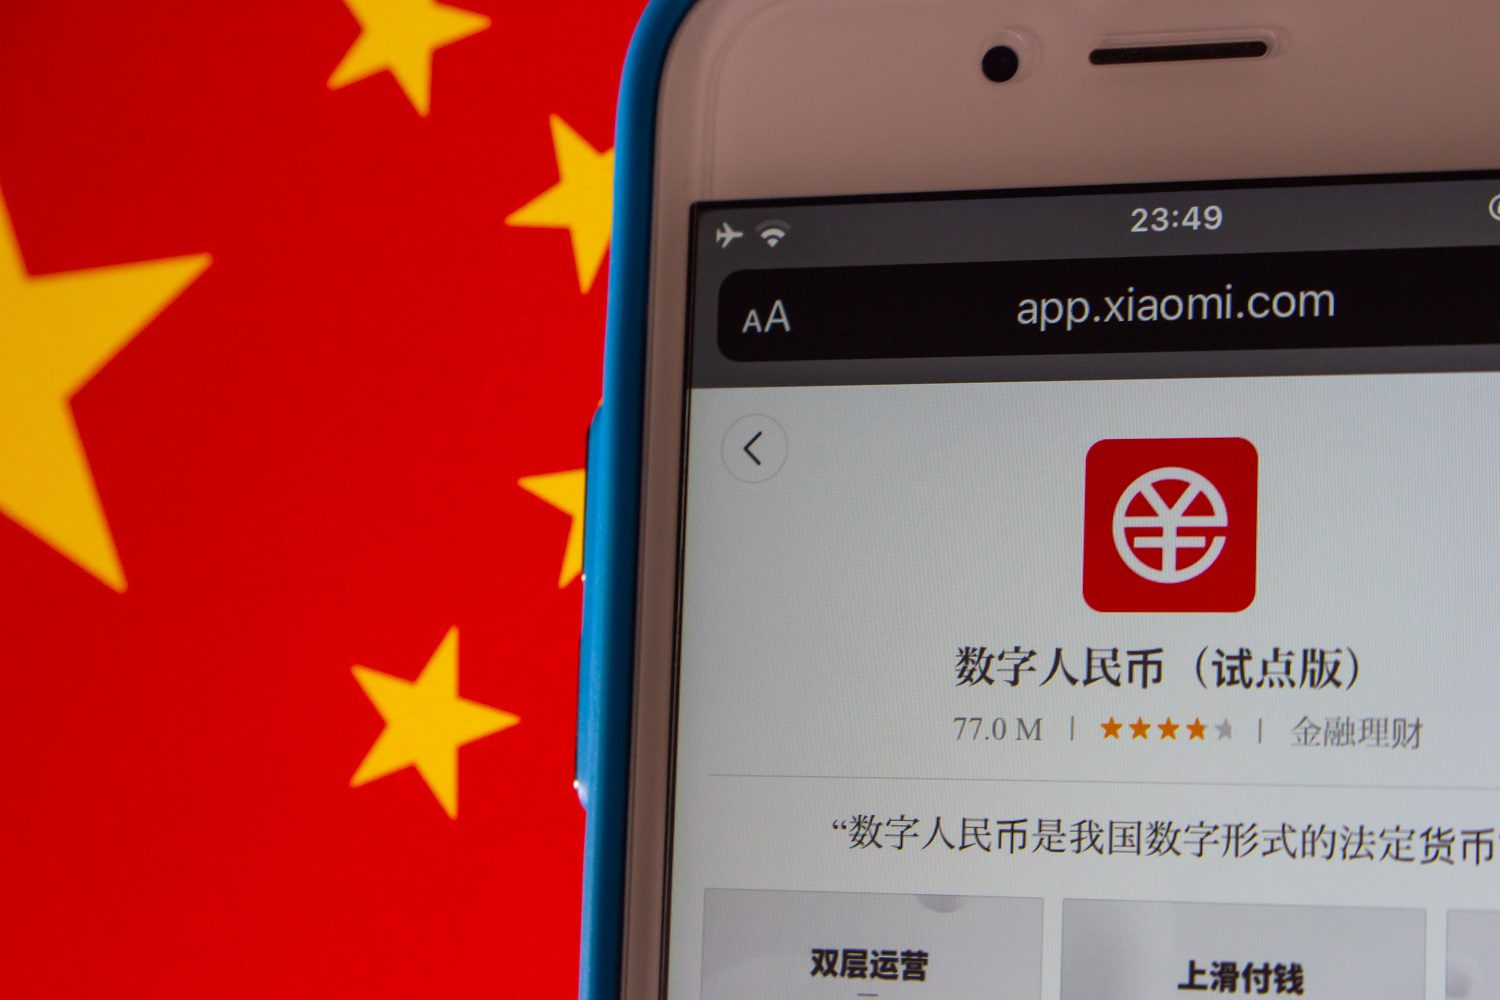 La aplicación de yuan digital chino en el mercado de aplicaciones de Xiaomi en el contexto de la bandera china.